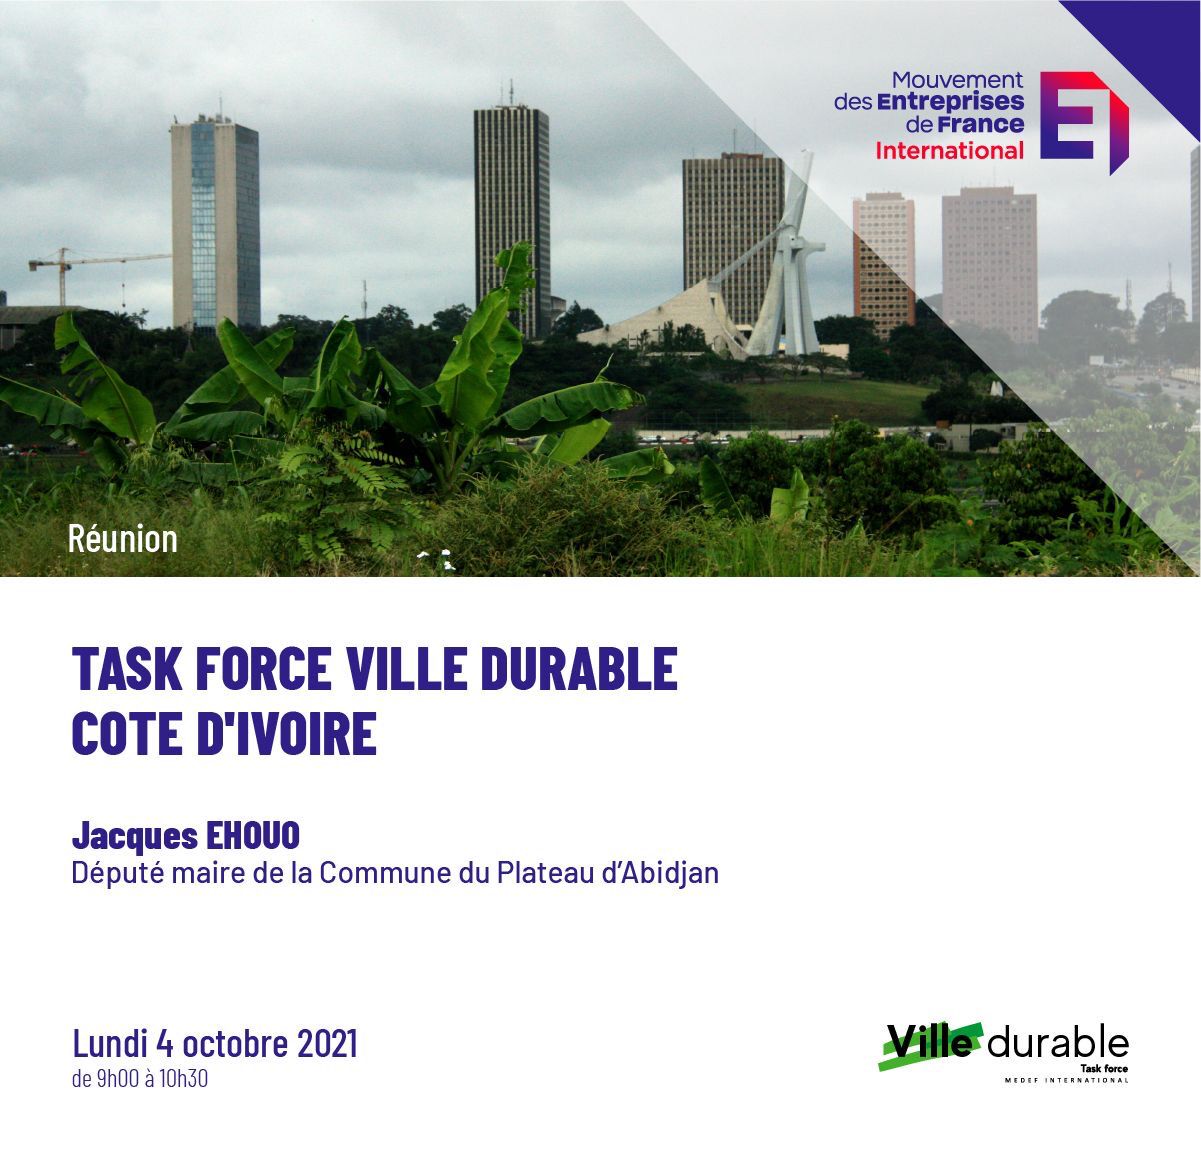 Participez à la task force Ville durable du MEDEF autour de M. Jacques EHOUO, député-maire de la Commune du Plateau d’Abidjan